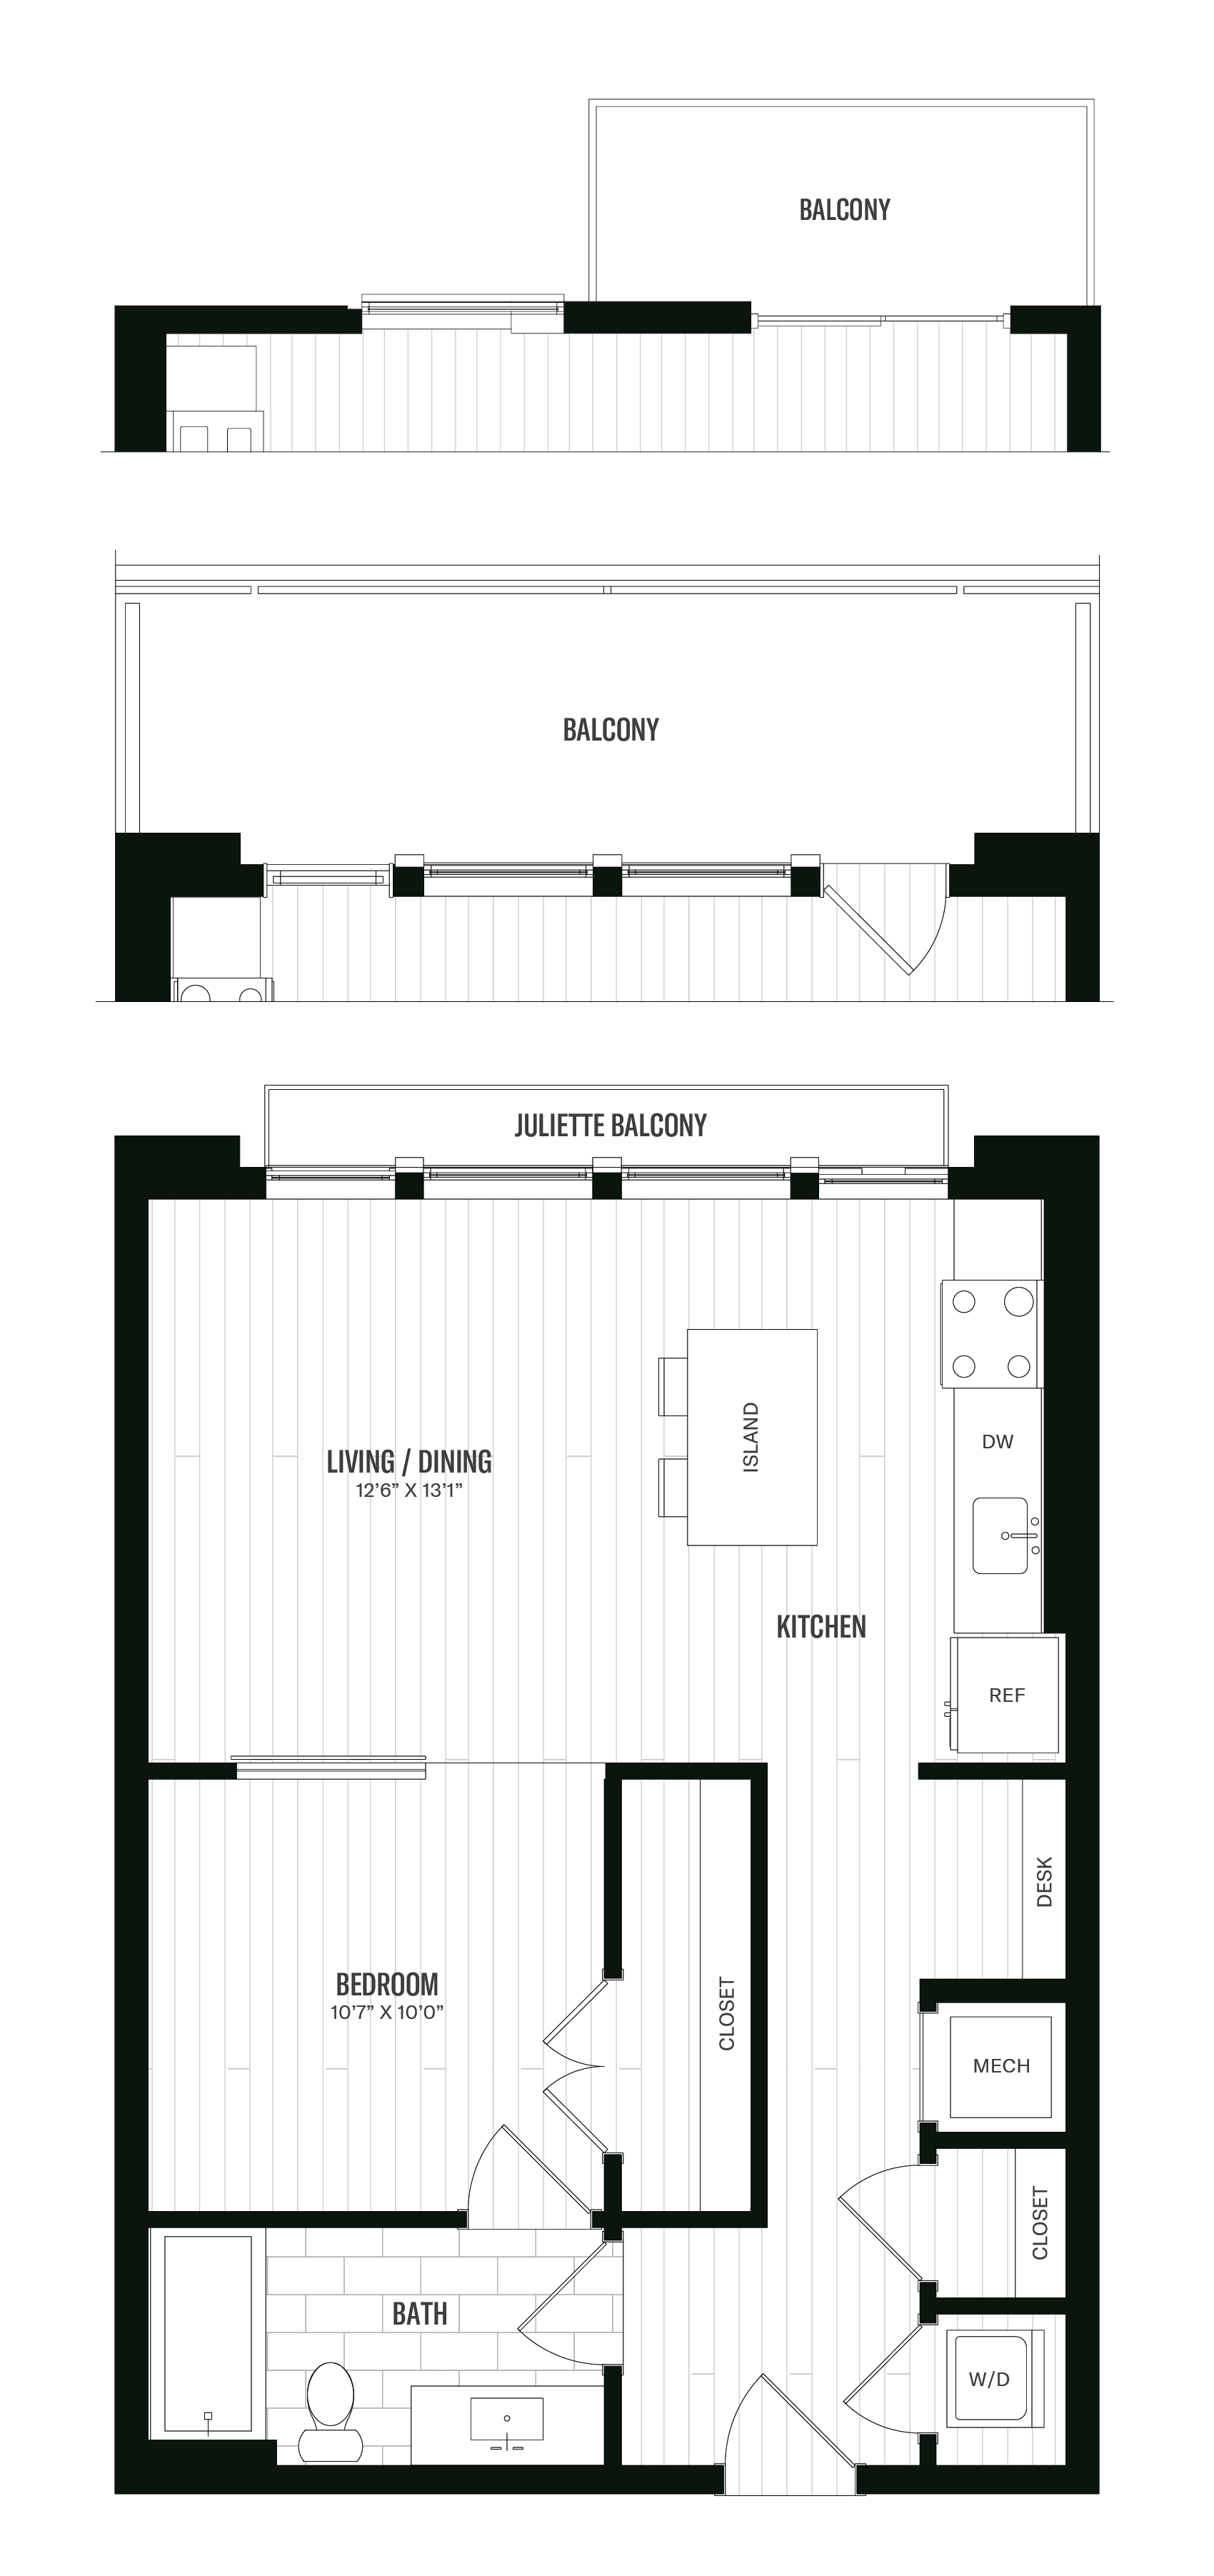 Floorplan image of unit 545